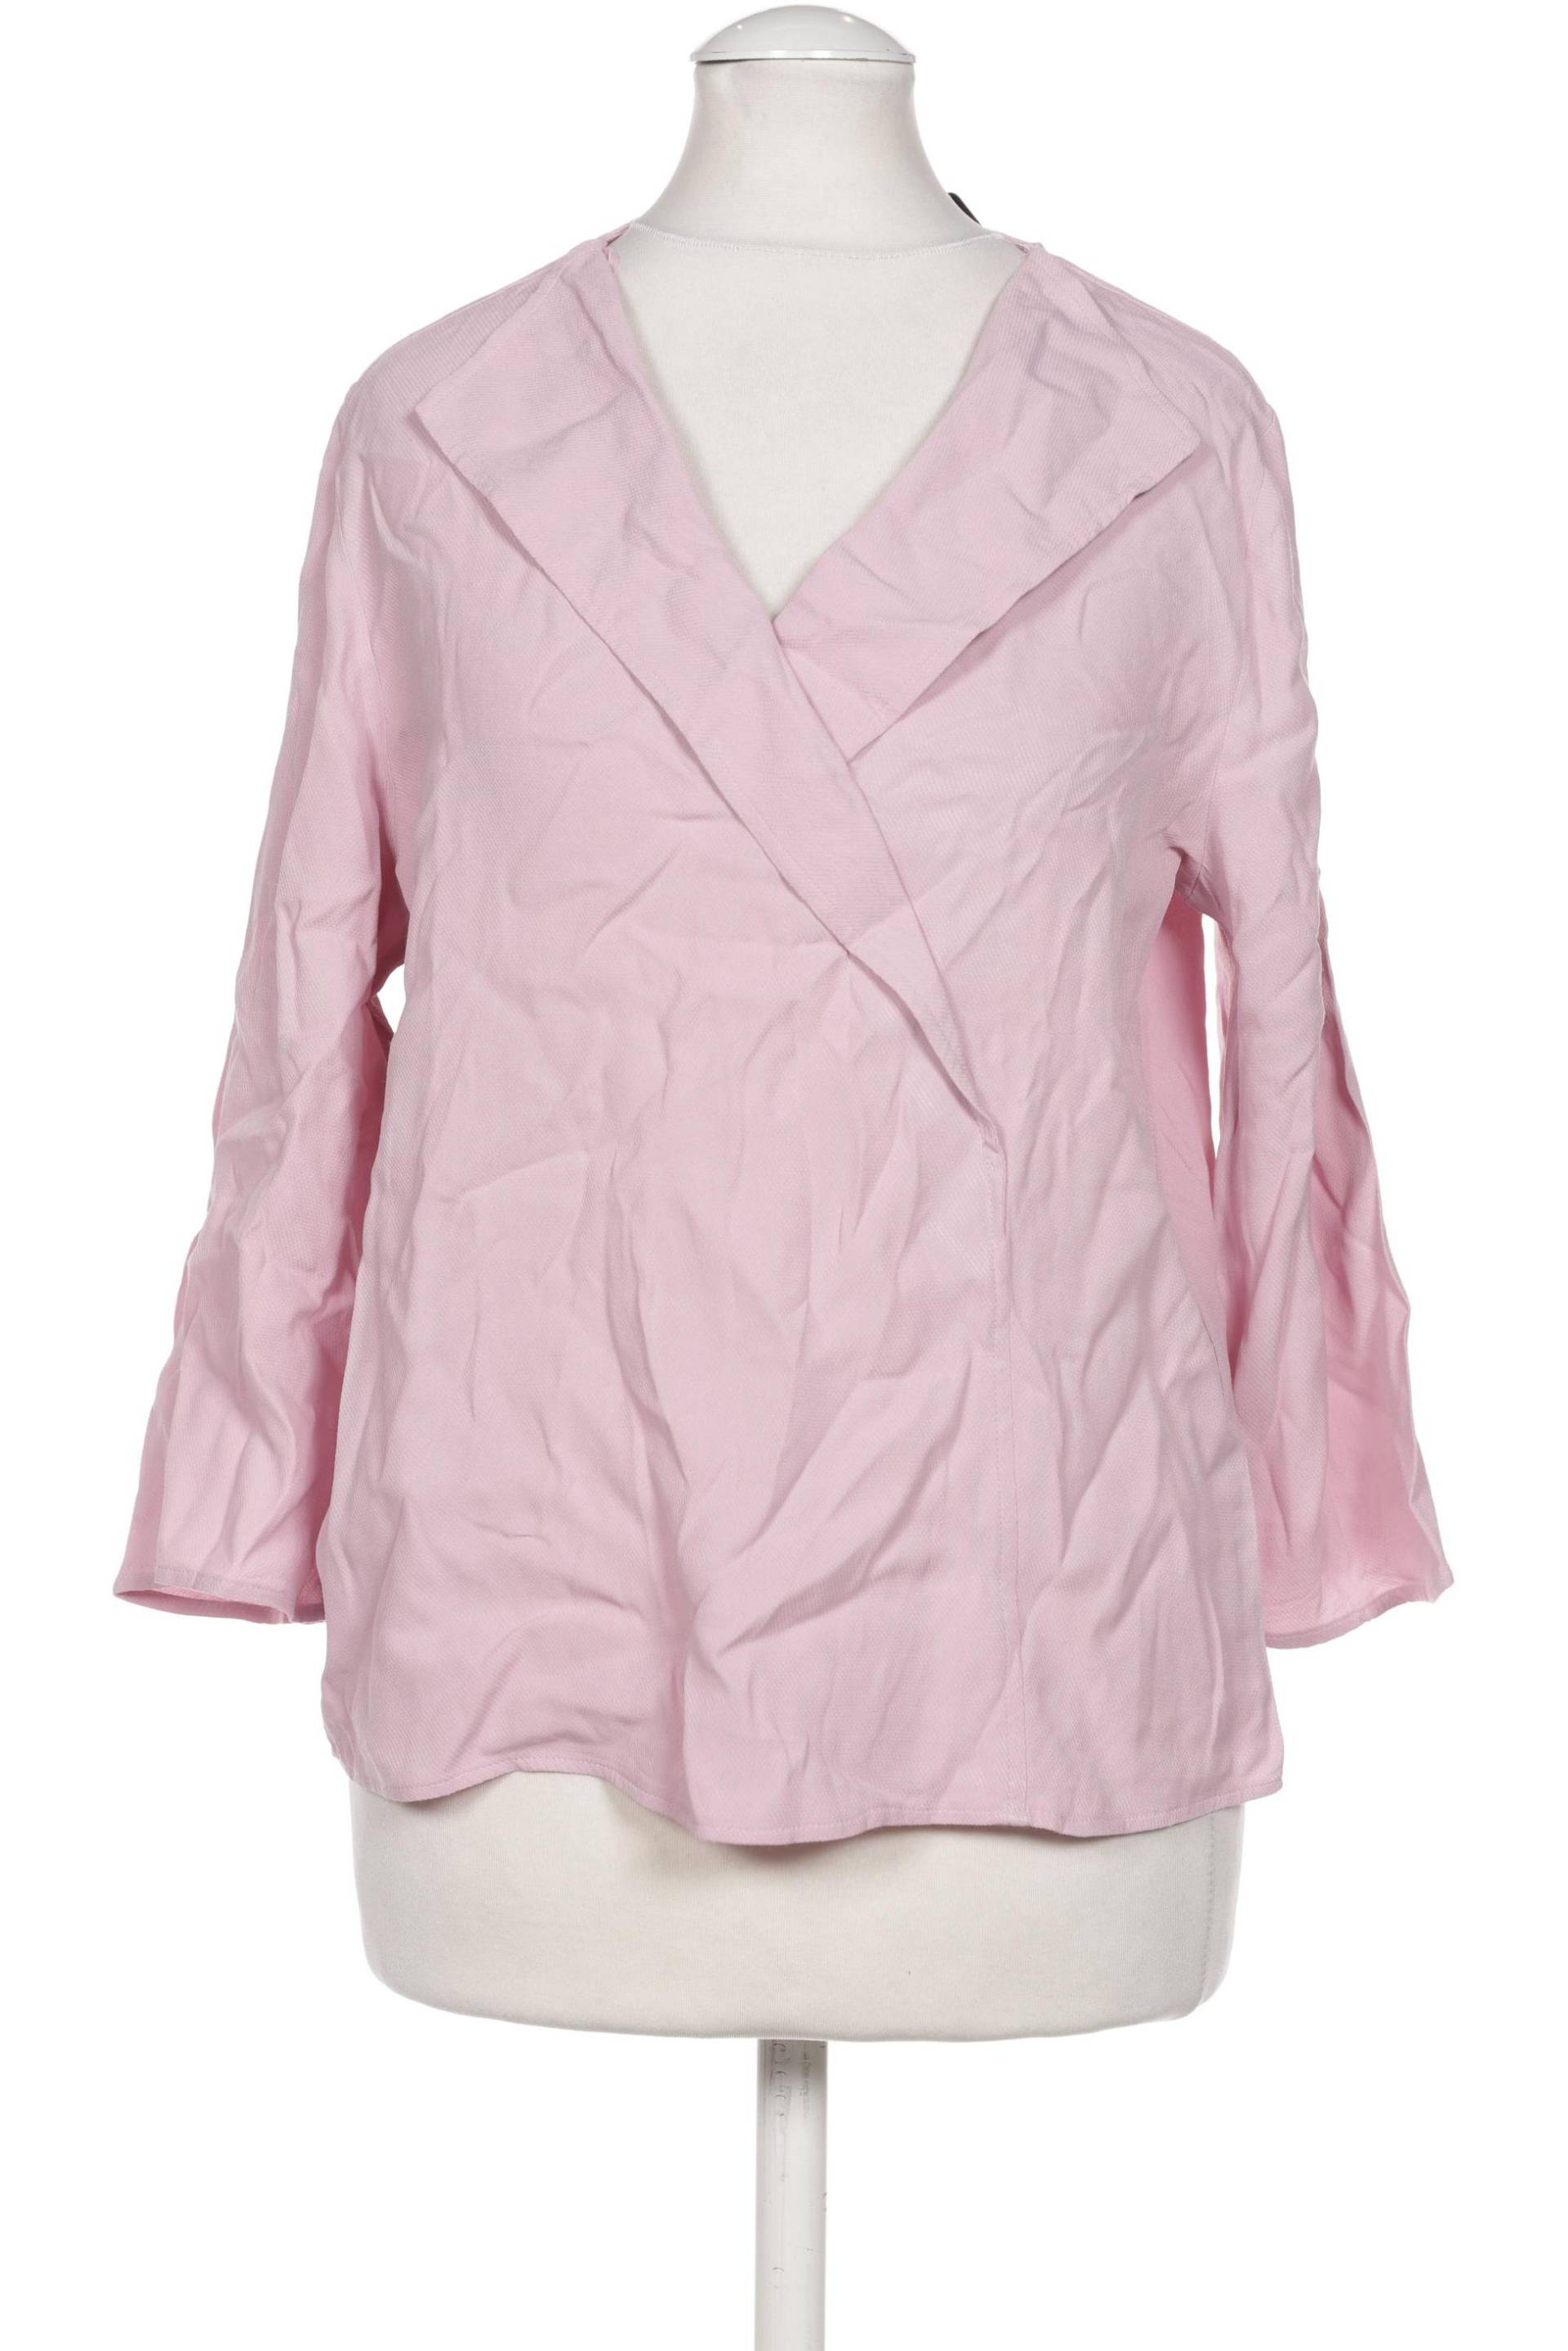 Gerry Weber Damen Bluse, pink von Gerry Weber